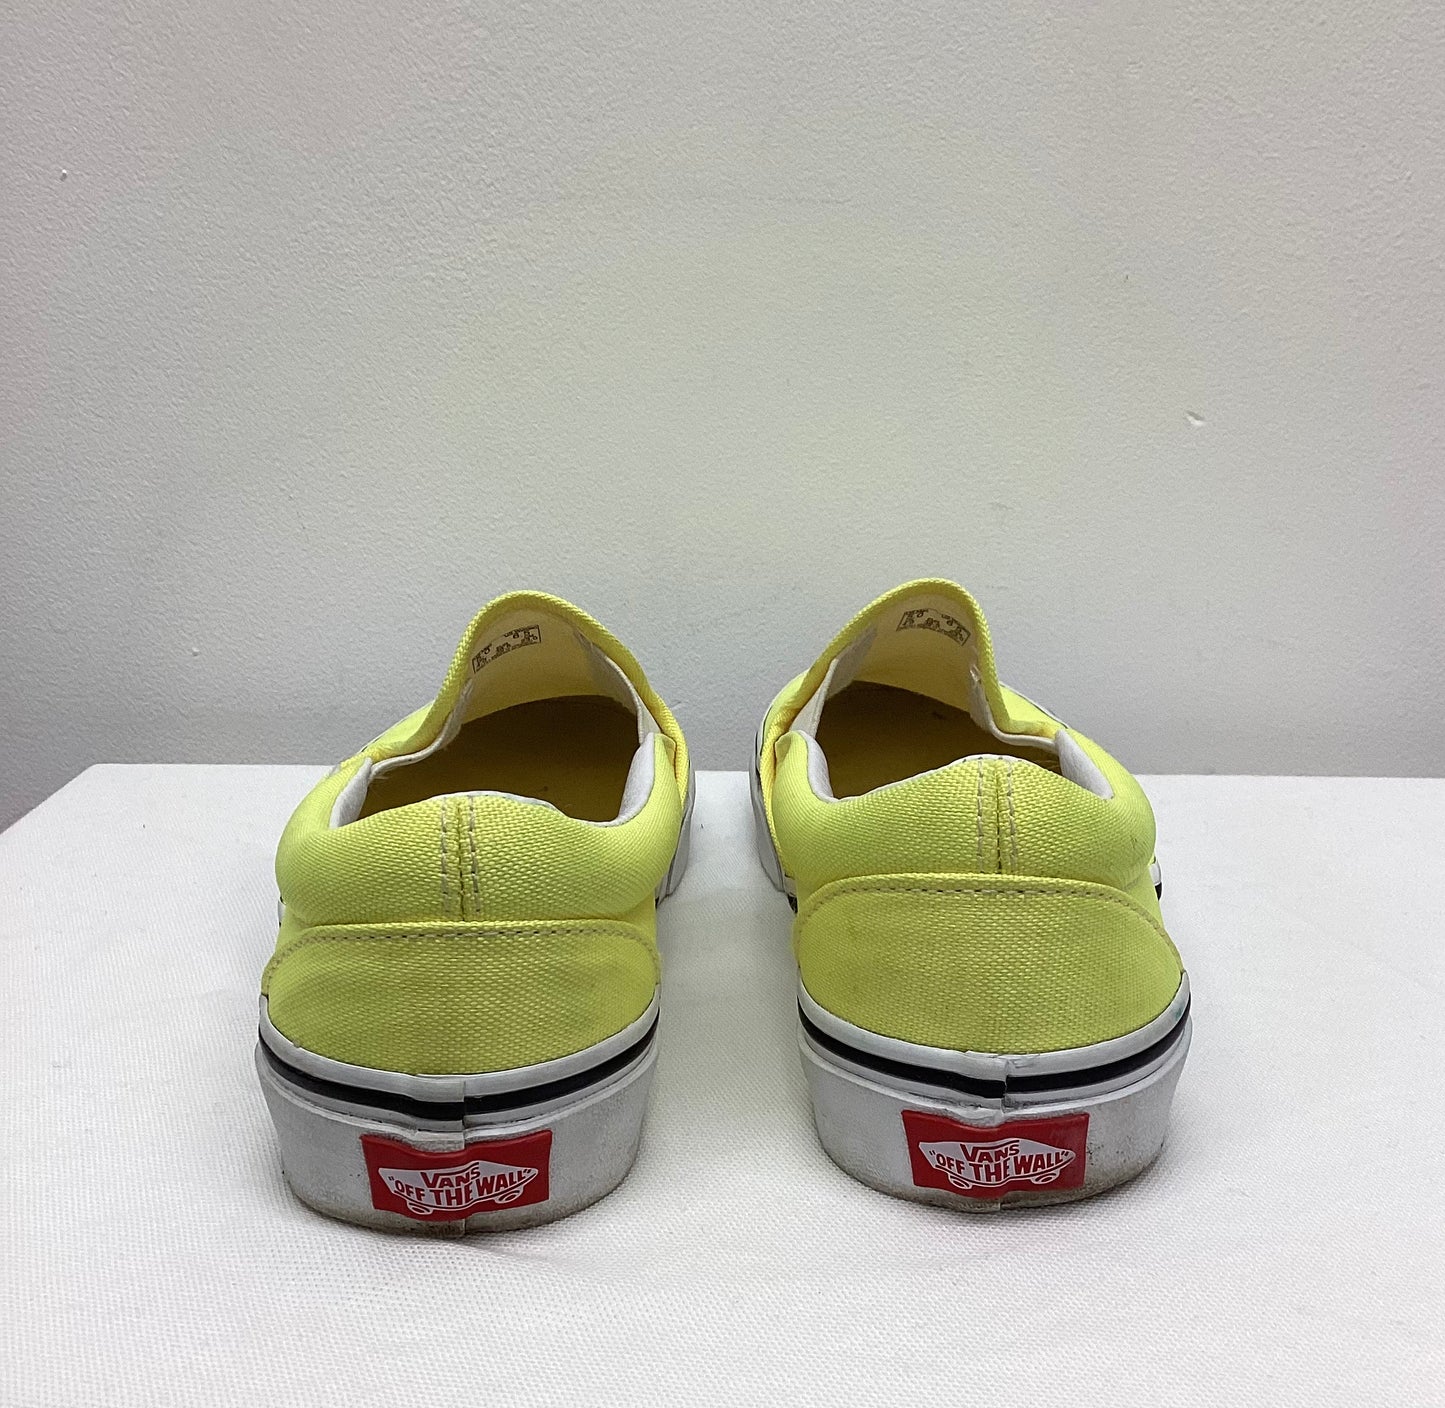 Vans Classic Canvas Slip On Neon Lemon Yellow Trainer Shoes UK 4 EU 36.5